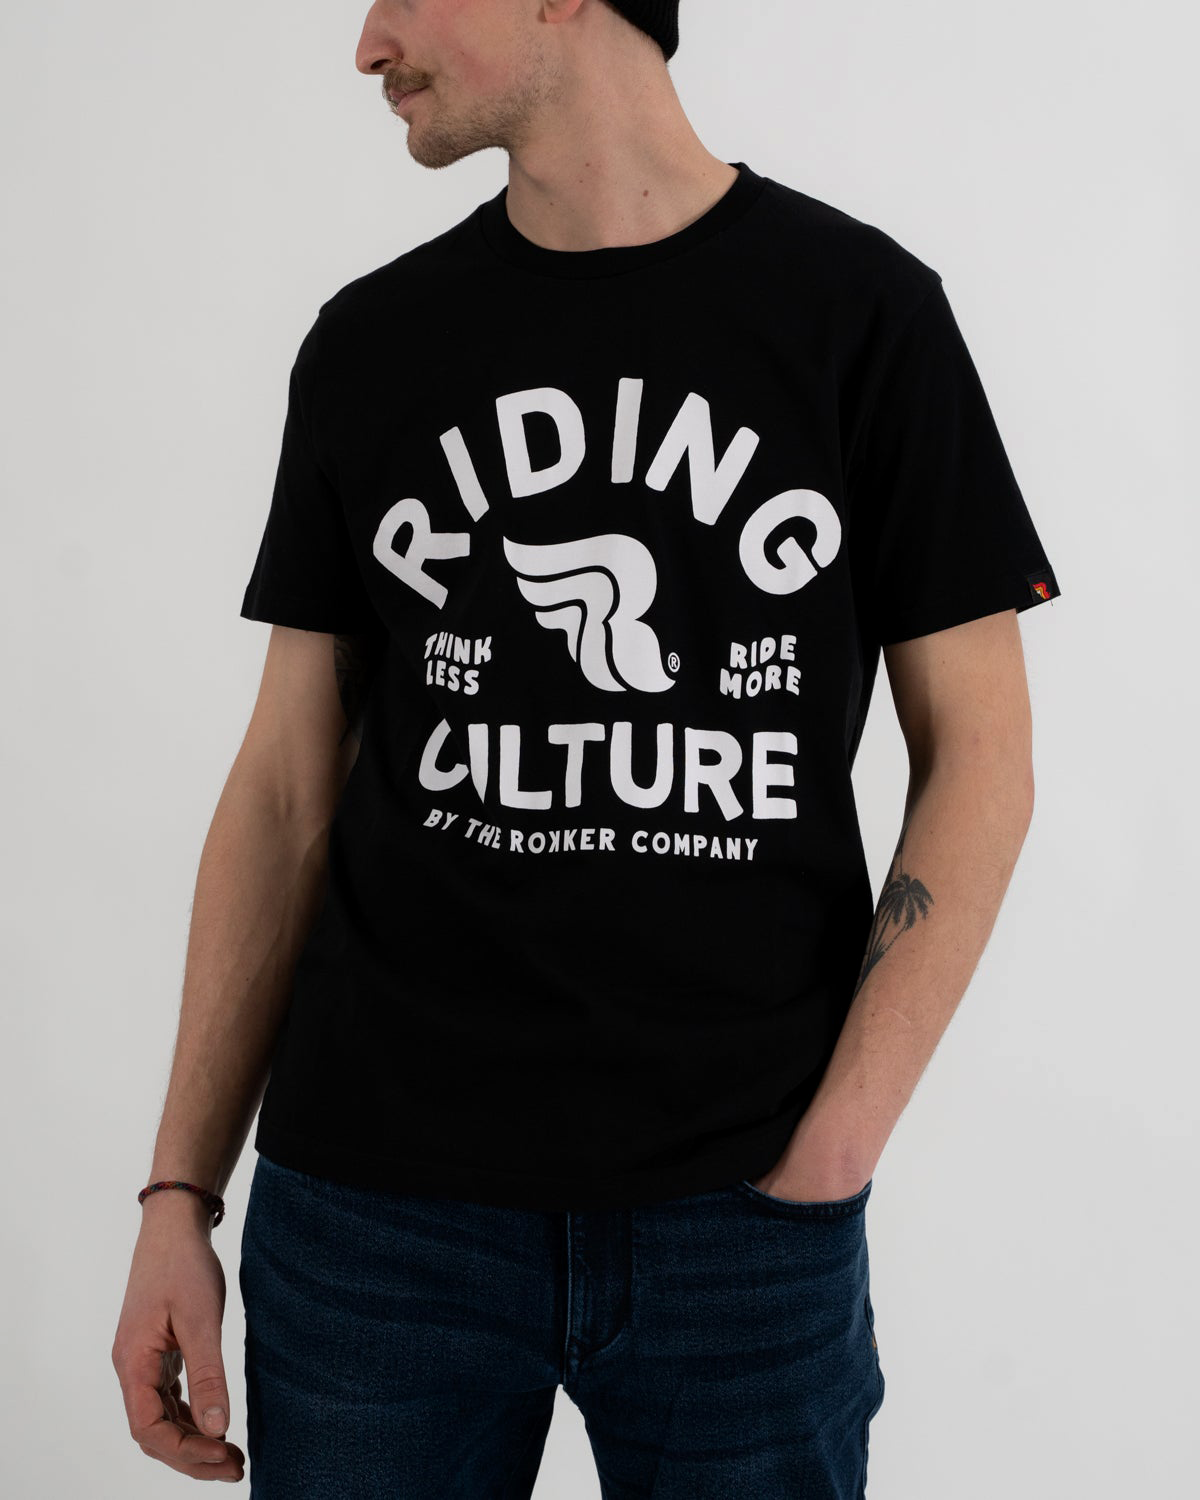 Riding Culture RC5001 Ride More, t-shirt - Noir/Blanc - M